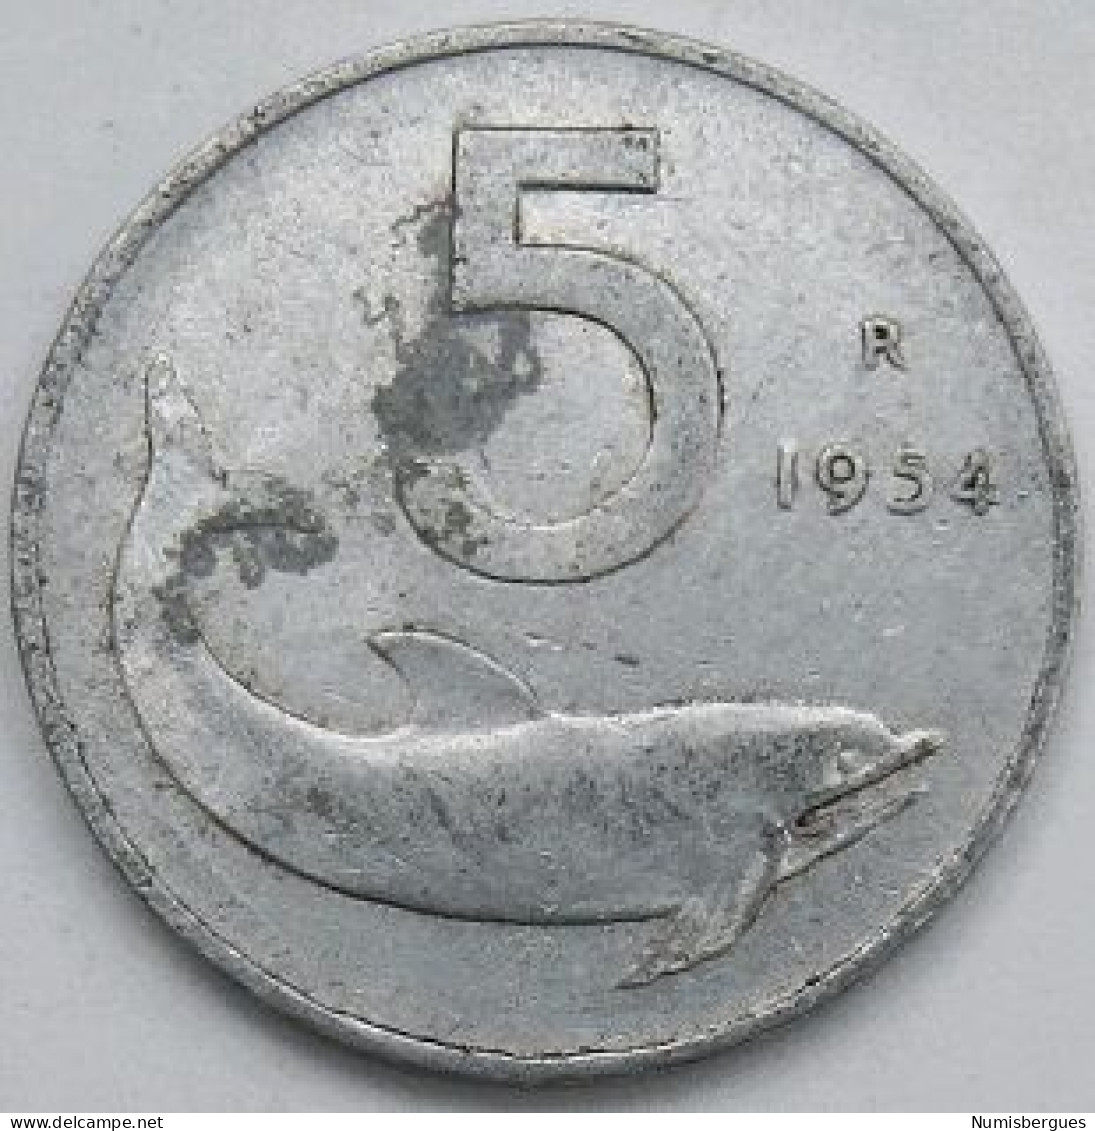 Pièce De Monnaie 5 Lires 1954 - 5 Lire